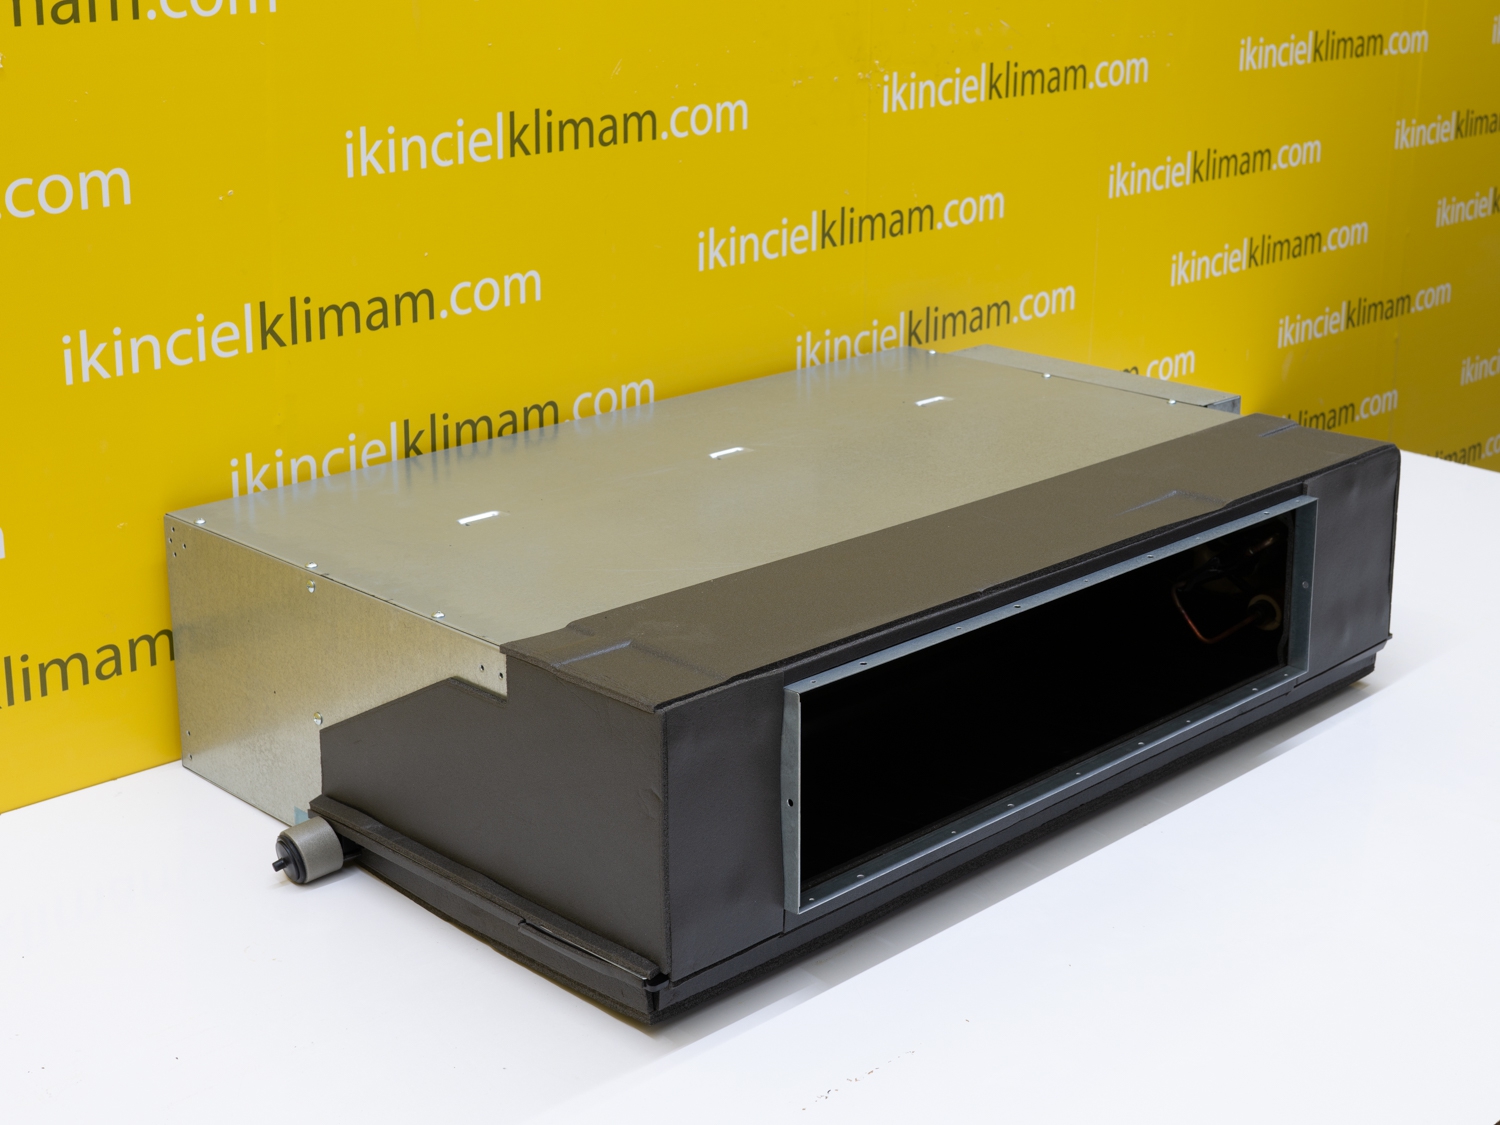 ikincielklimam.com | Fujitsu 9000 Duvar Tipi Klima İnverter 12000